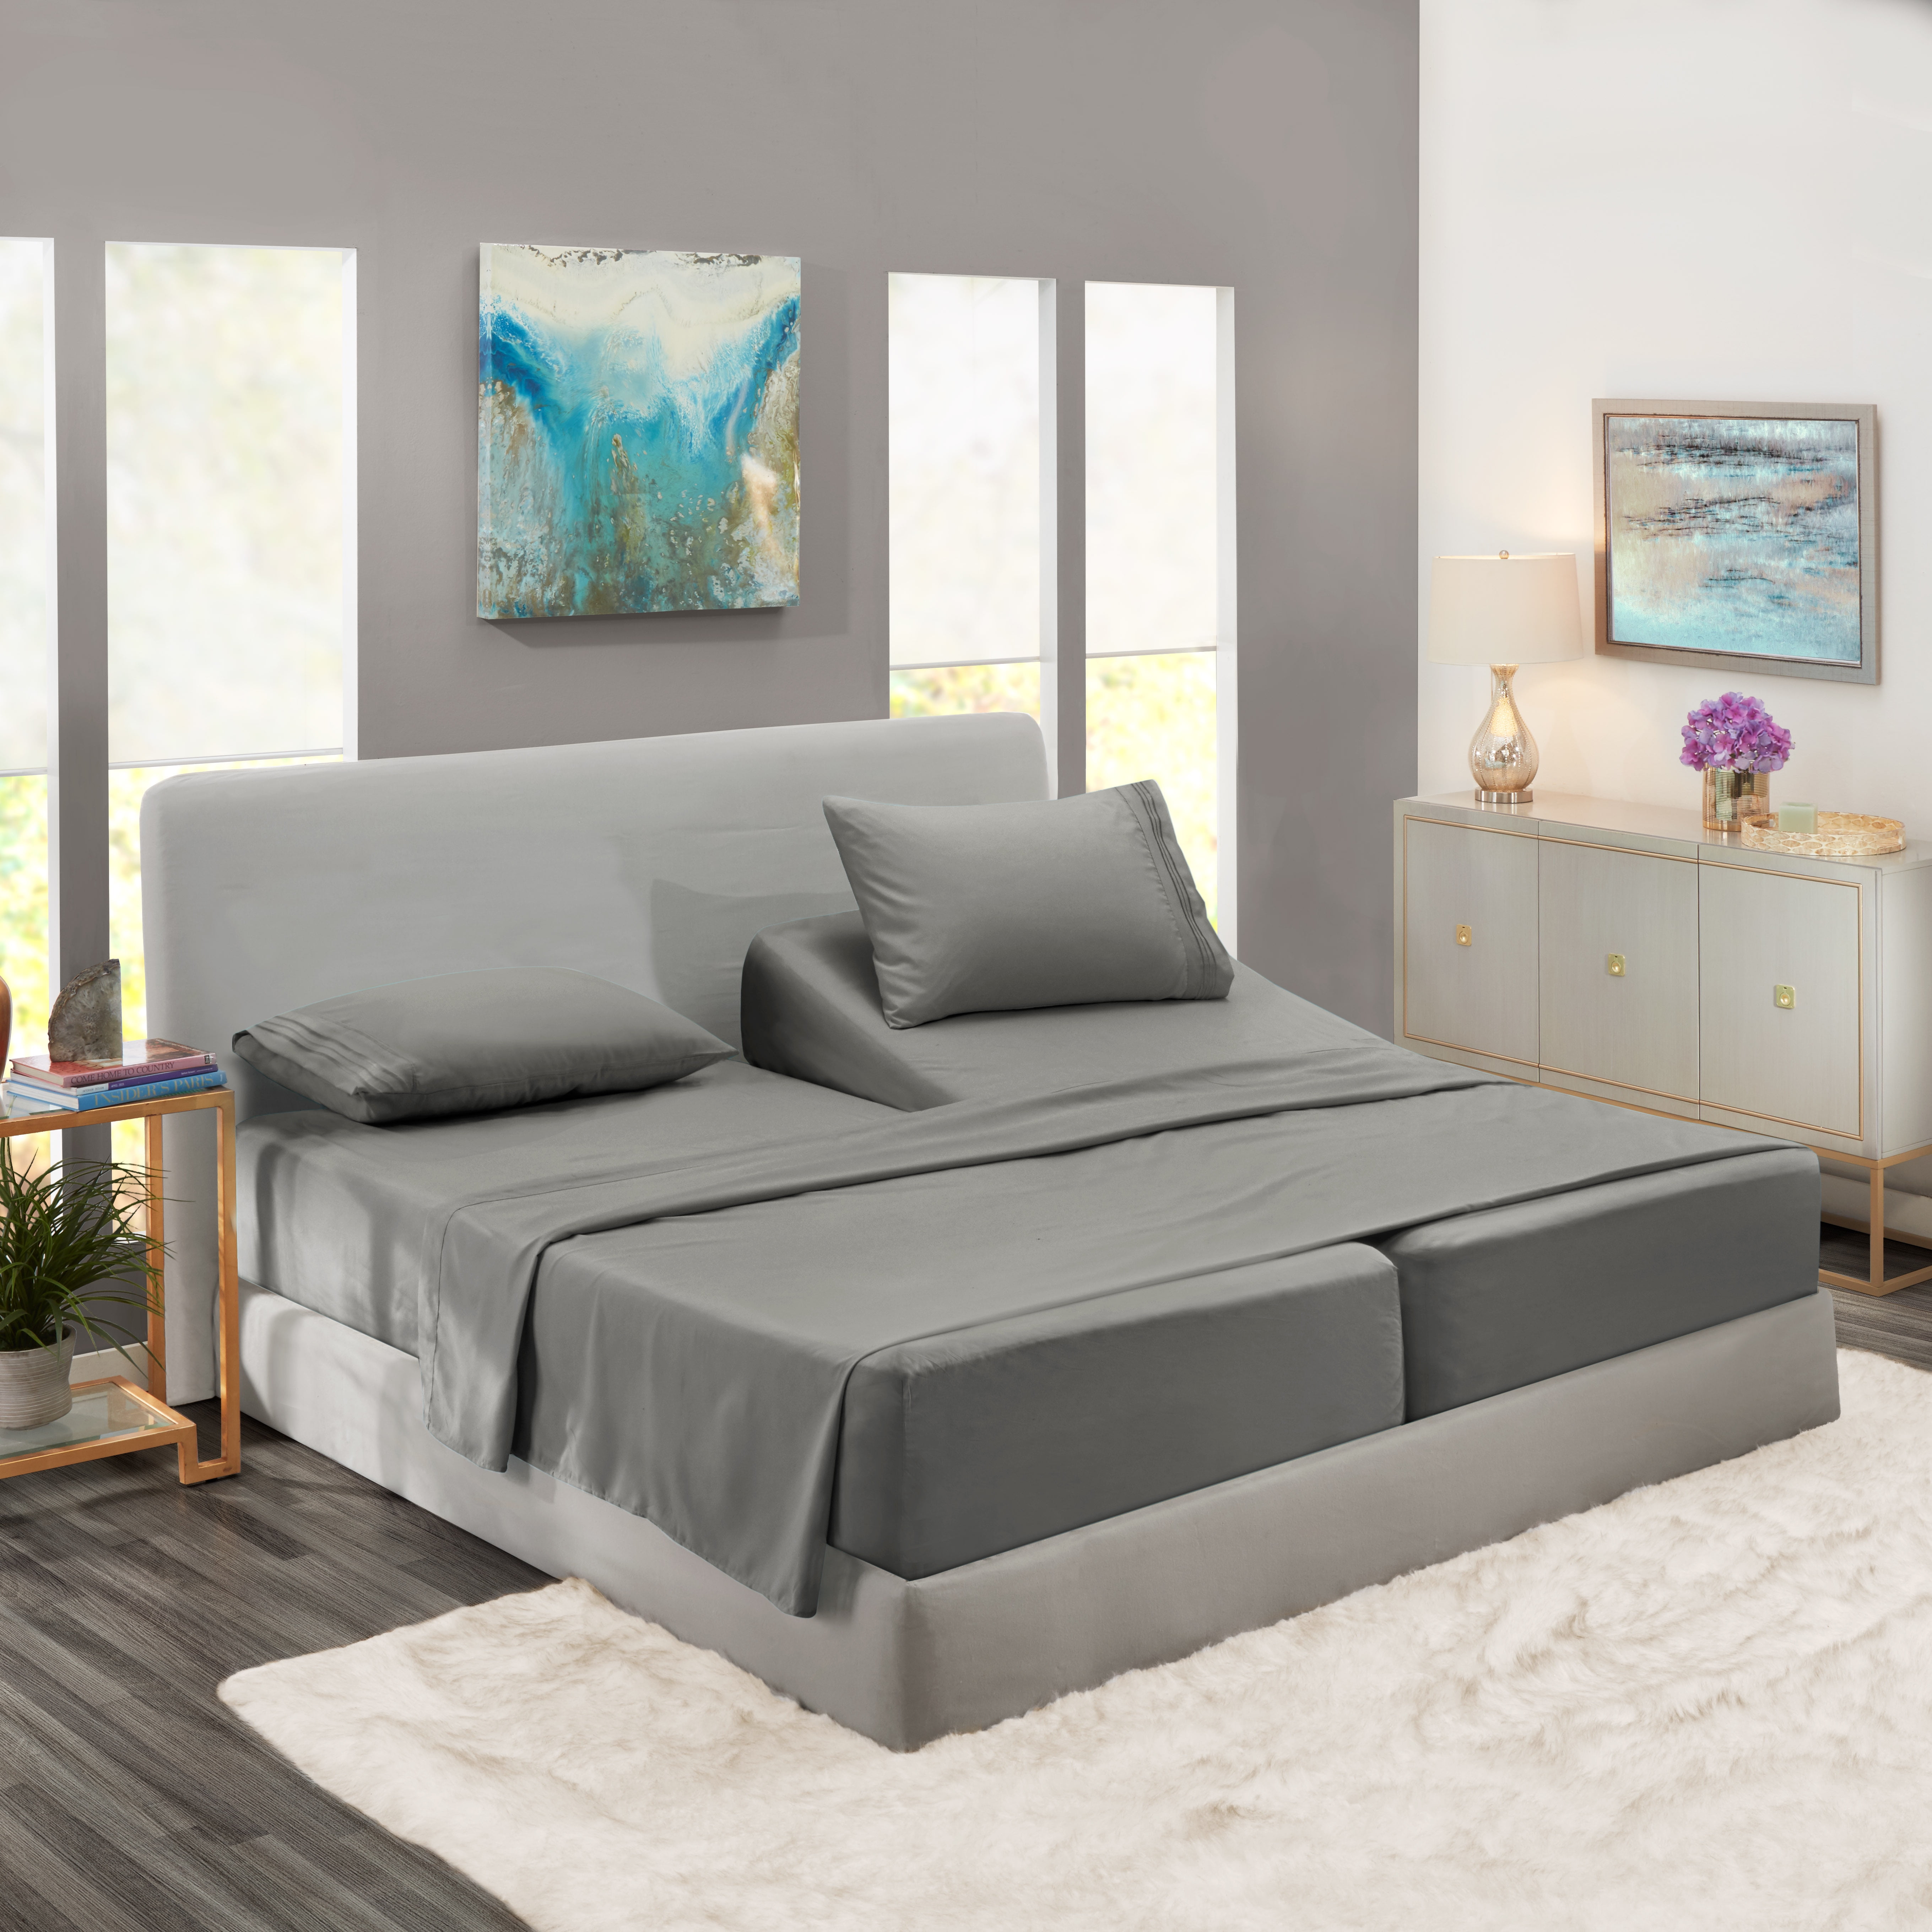 Split King Bed Sheets Set For, Split California King Sheets For Adjustable Beds